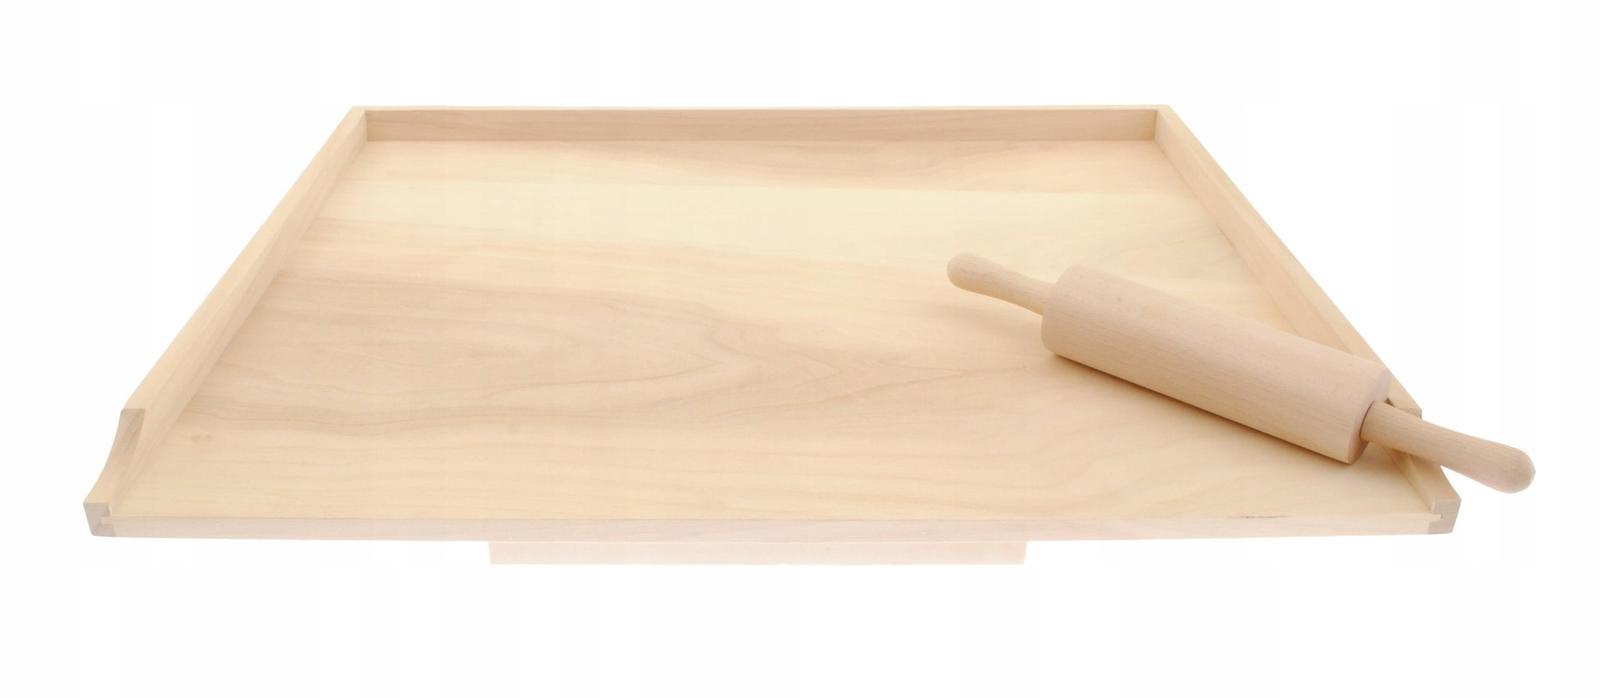 Stolnica kuchenna 60x1,6x75 cm drewniana jednostronna XXL + wałek  nr. 1